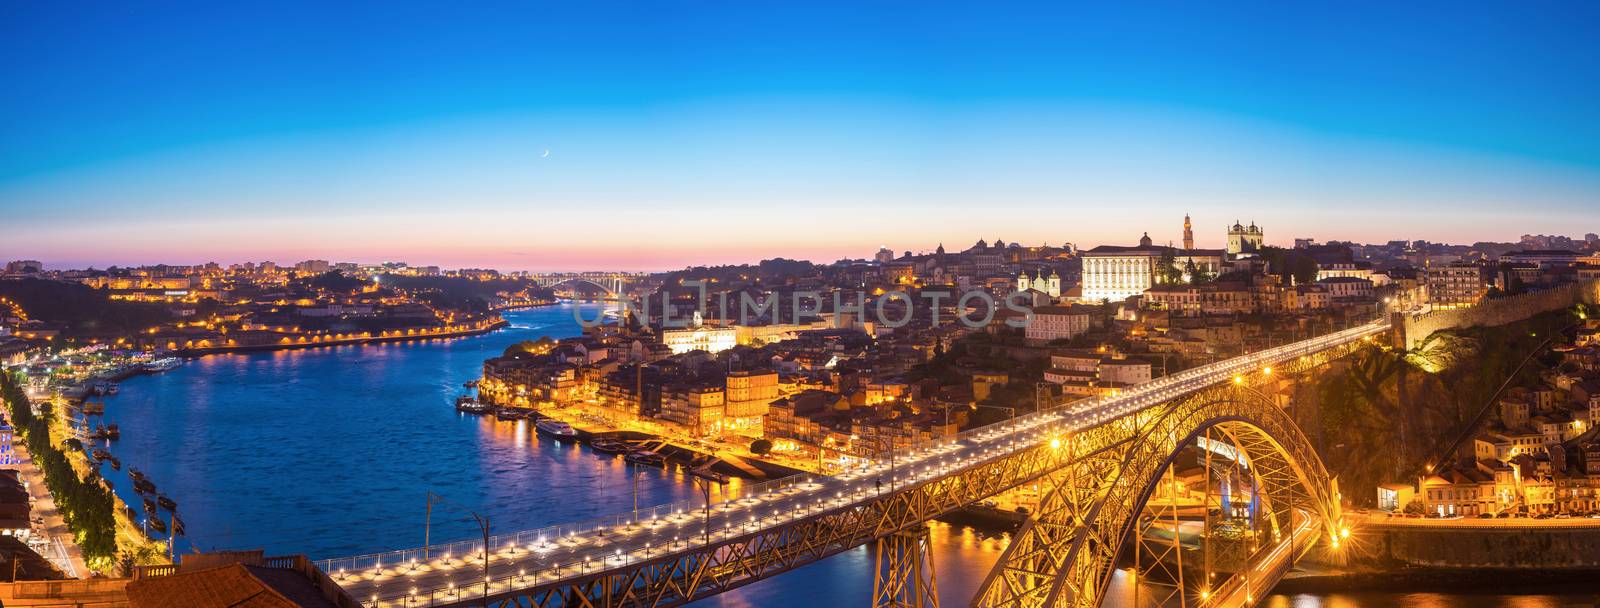 Panorama of Dom Luiz bridge in Porto Portugal at dusk